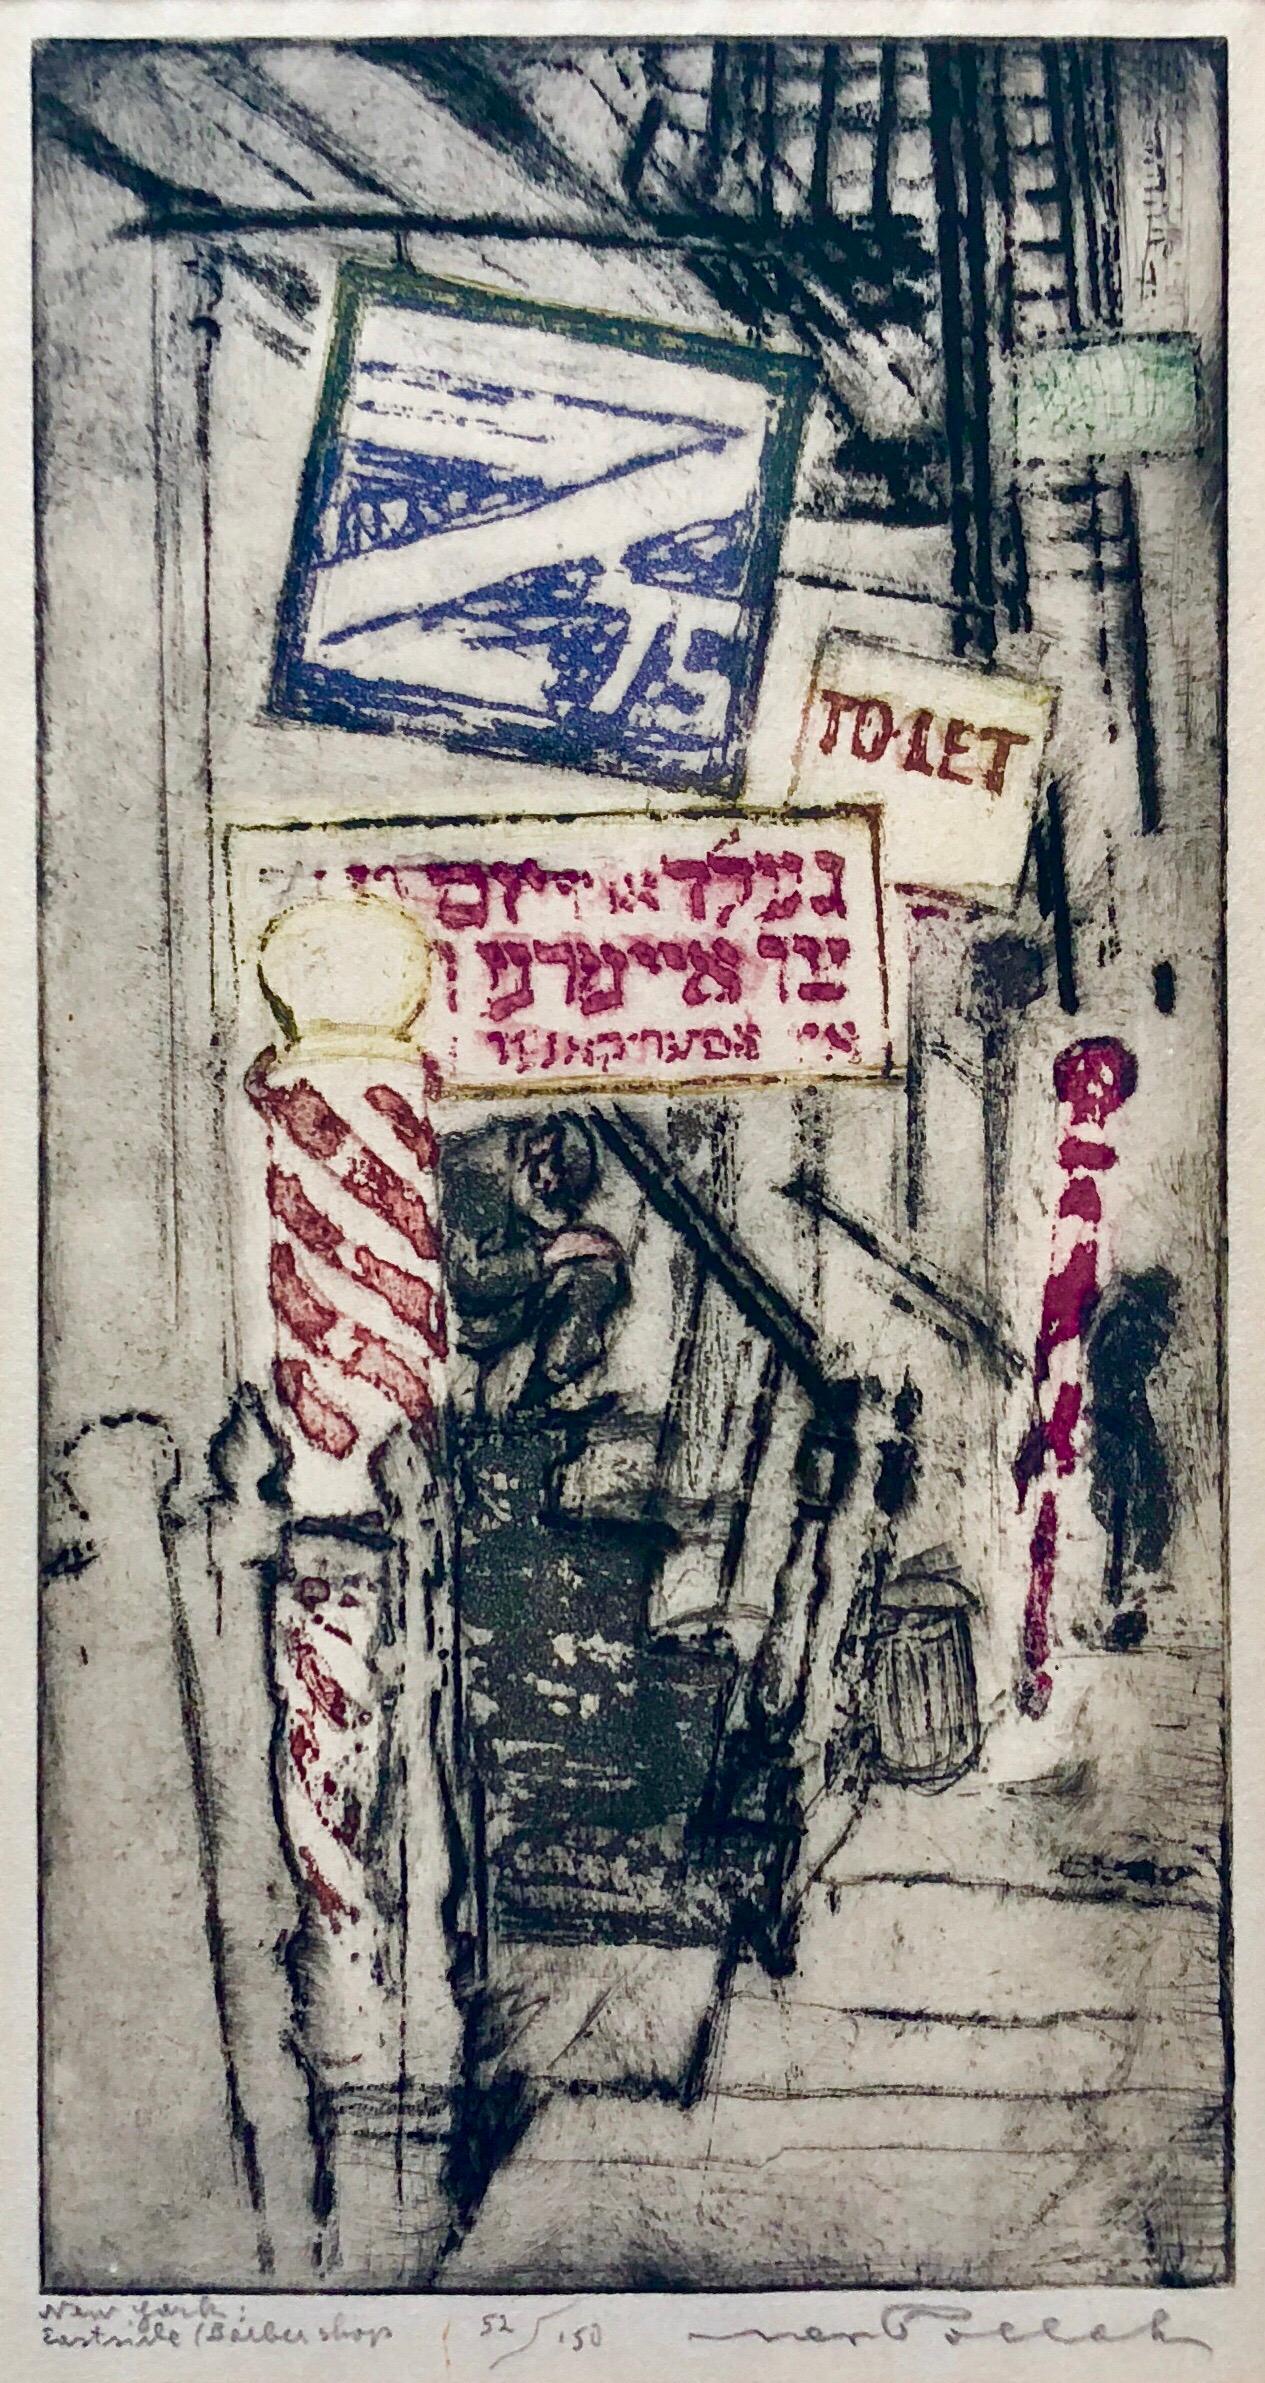 Handsigniert, nummeriert und betitelt. Es zeigt die alte Lower East Side von New York City mit ihren Mietskasernen und verschiedenen Sprachschildern, Friseurstangen und herumlungernden Figuren. Hier gibt es Jiddisch, bevor es Chinatown wurde. 
8 7/8